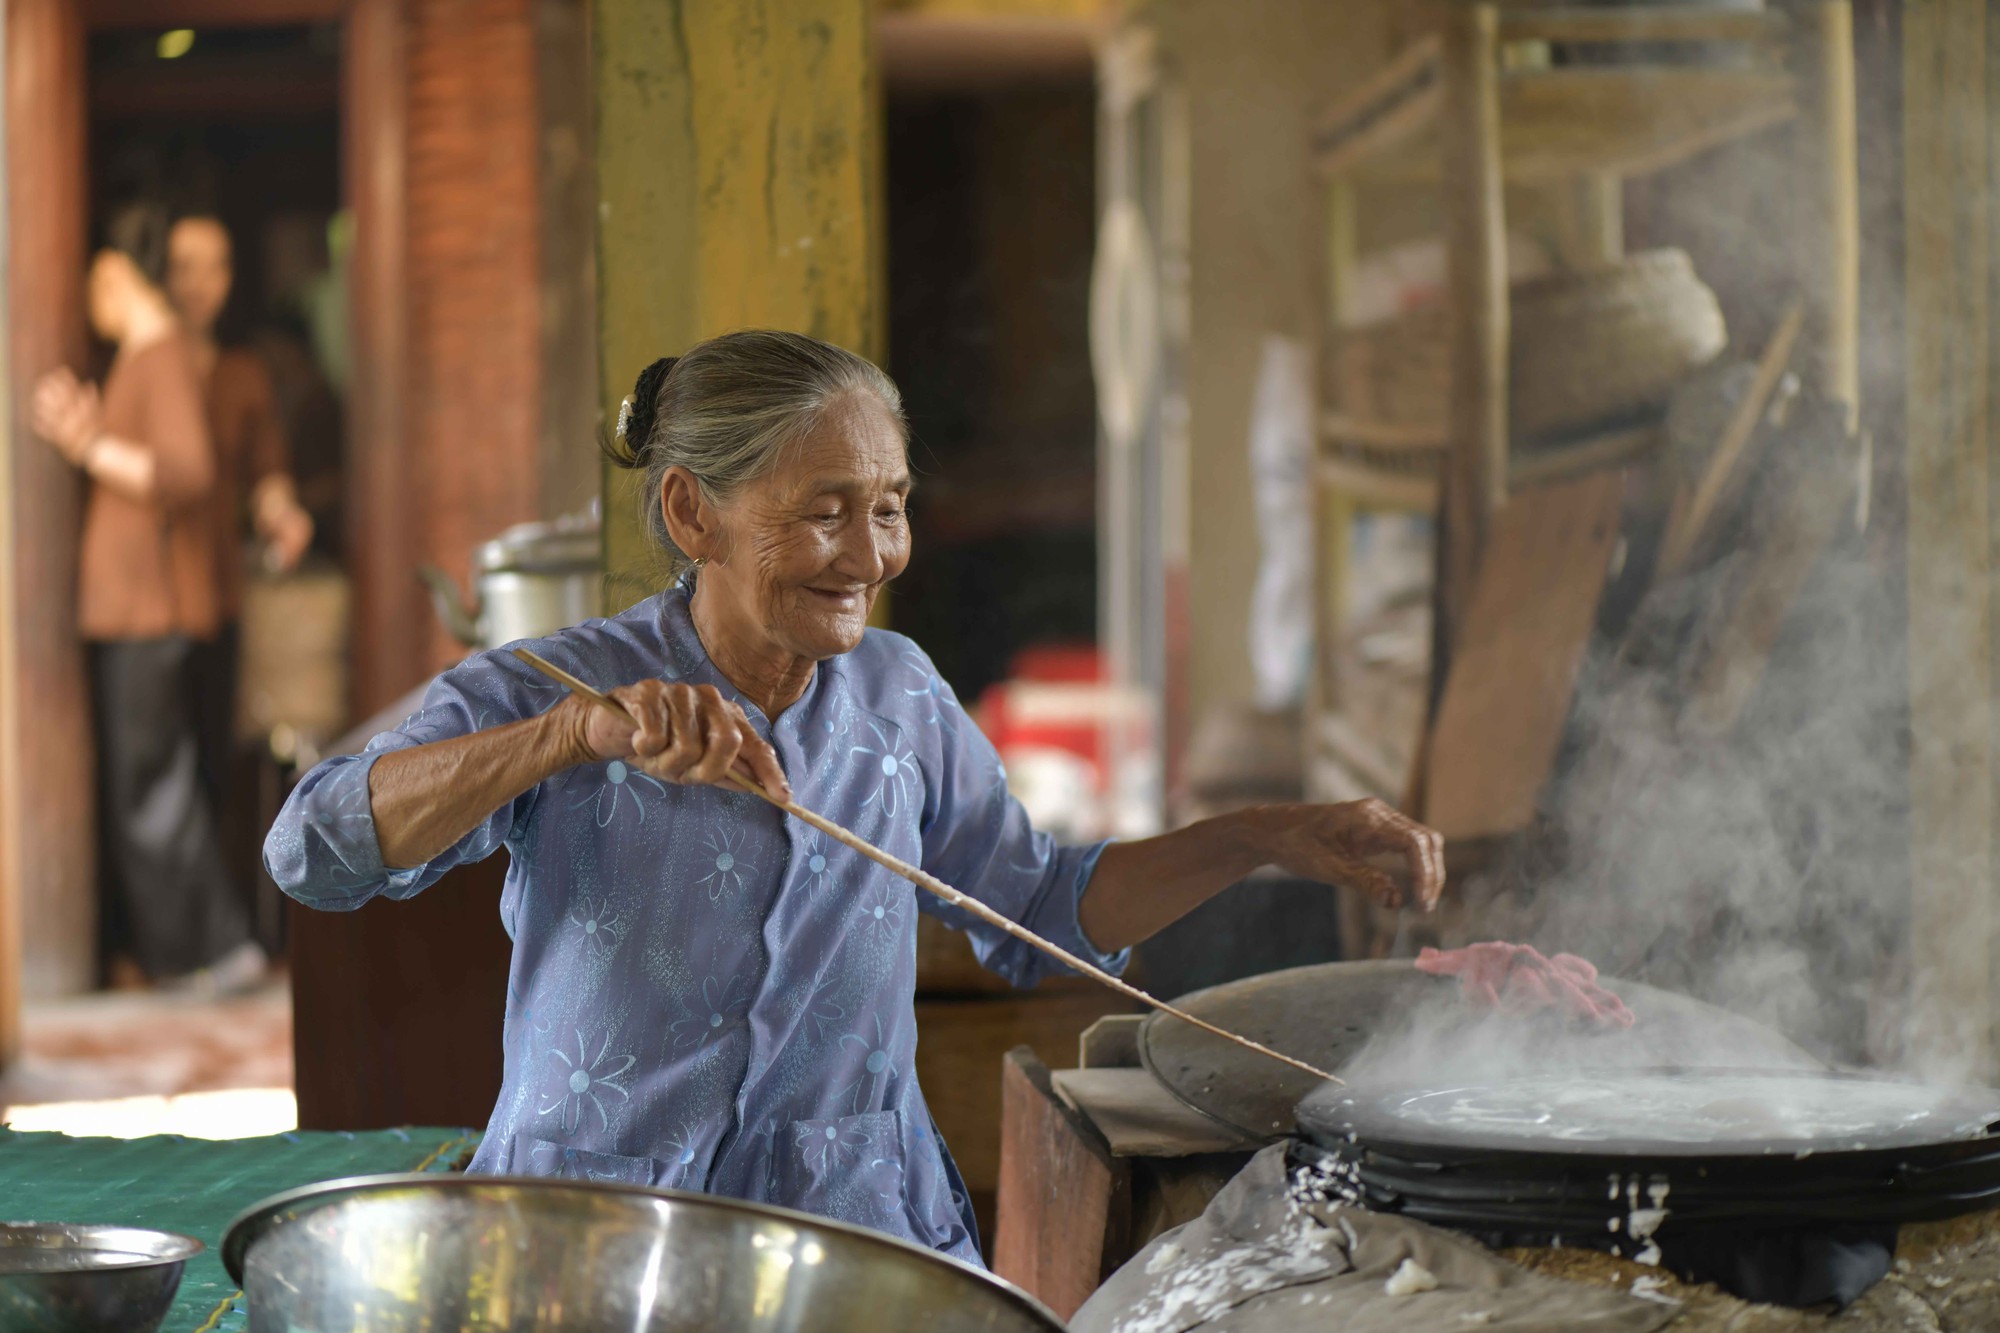 Cụ bà Việt: Những bức hình của cụ bà Việt sẽ làm cho bạn xúc động và ngưỡng mộ tinh thần lạc quan và kiên cường của người già. Họ là một món quà đáng trân trọng cho cả thế giới và chúng ta nên học tập từ họ. Hãy cùng xem các bức hình đáng yêu này để nhận được một lượng năng lượng tích cực.